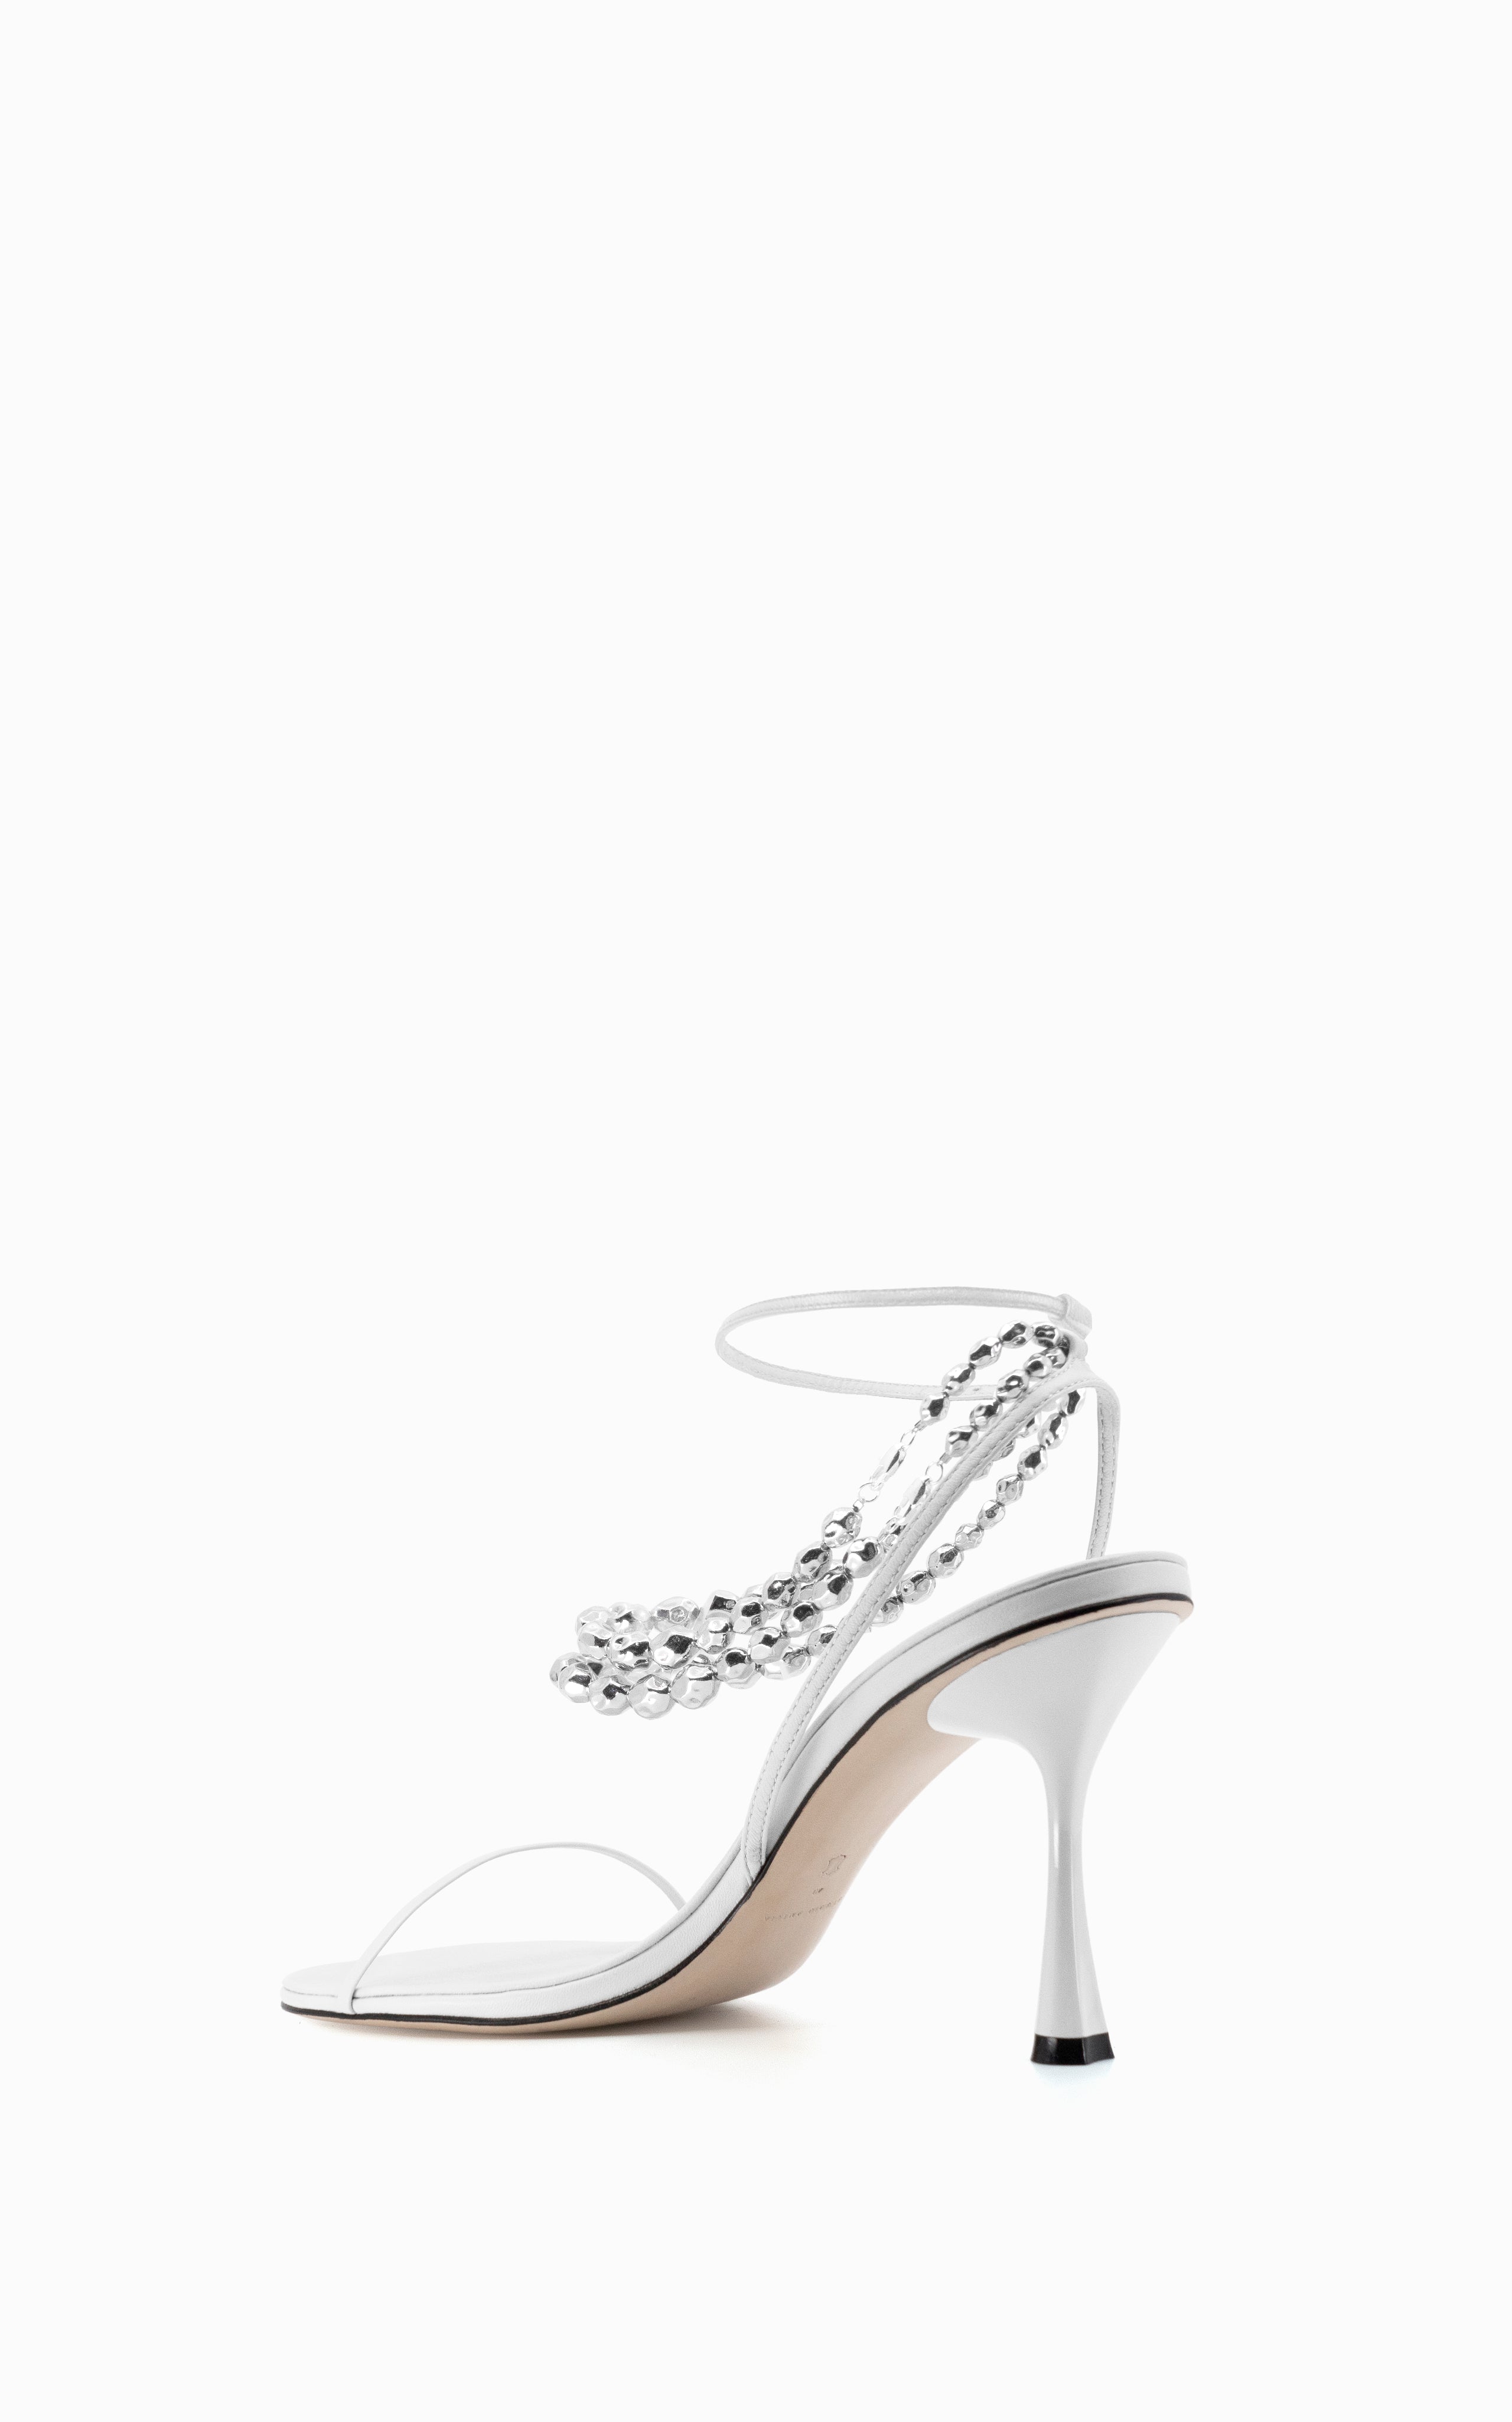 ZINZY WHITE High Heels | Buy Women's HEELS Online | Novo Shoes NZ